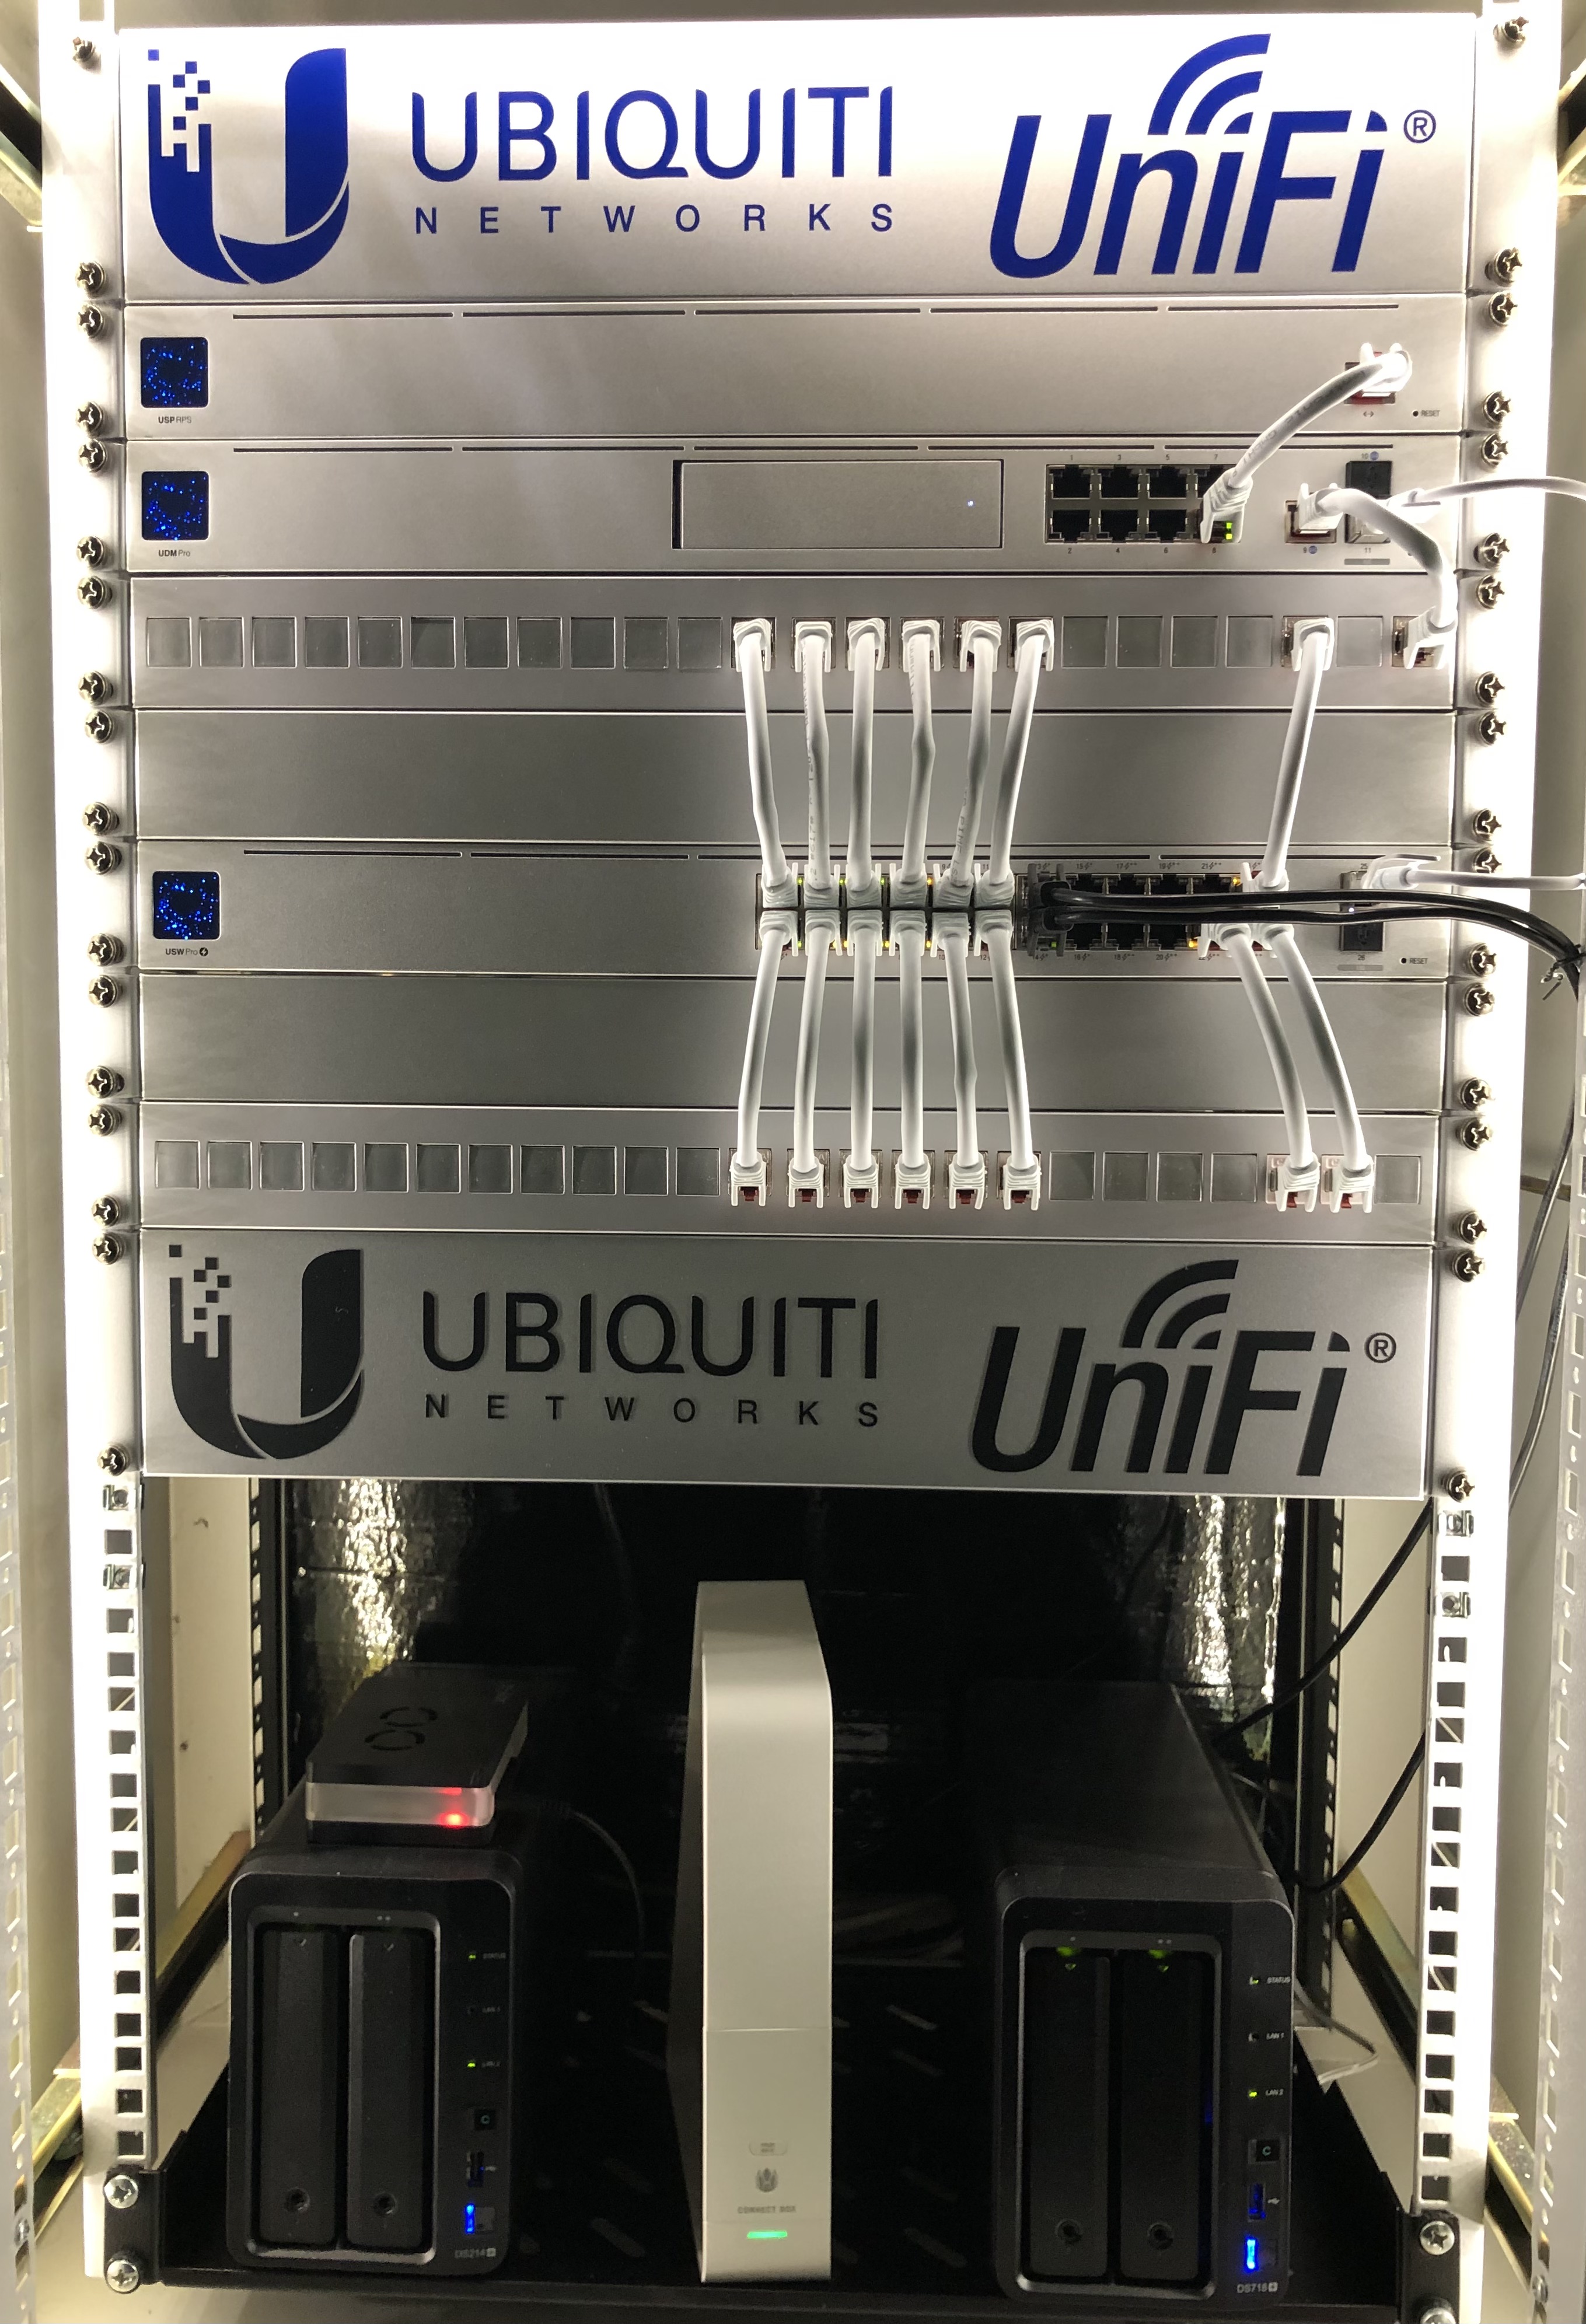 Server Rack mit blauem Ubiquiti UniFi Logo